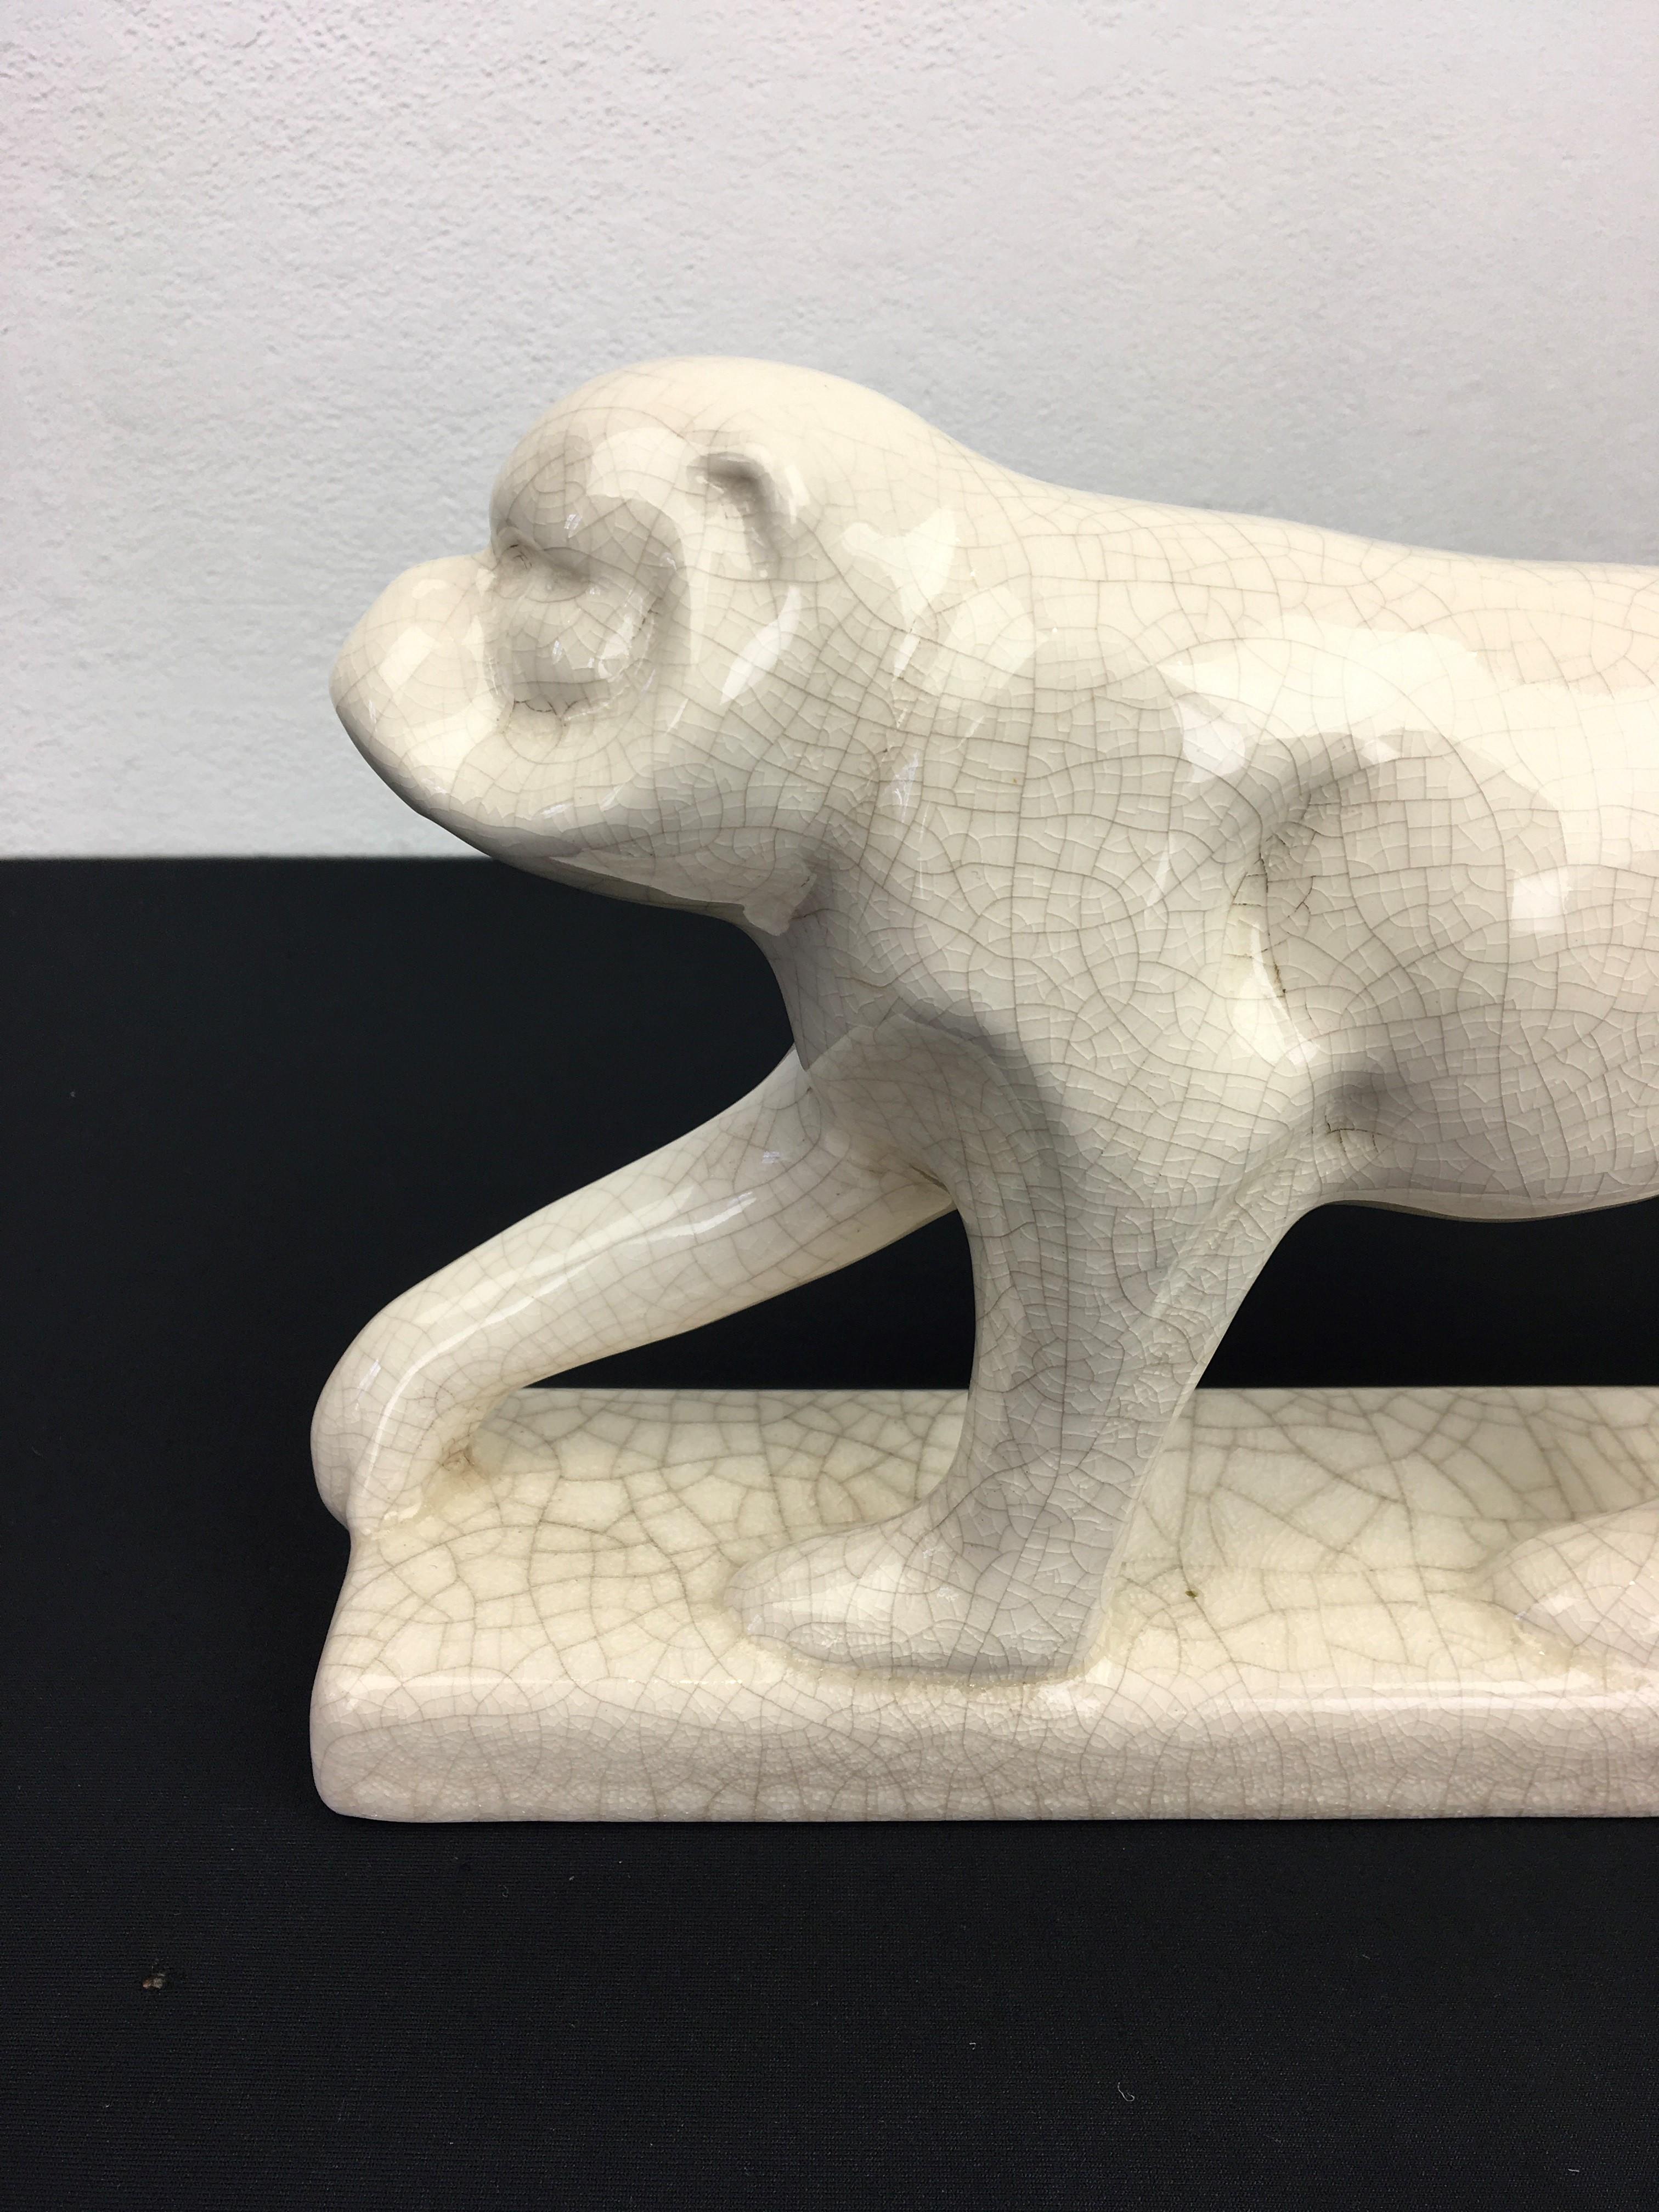 Craquelé-Affenskulptur im Art Deco-Stil. 
Dieses Craquelé Steingut - Keramik - Fayence Affe
wurde in Belgien von Emaux De Louviers hergestellt und ist mit einem Stempel versehen. 
 Die Farbe dieser Affenfigur ist beige / off-white. 

Diese rissige